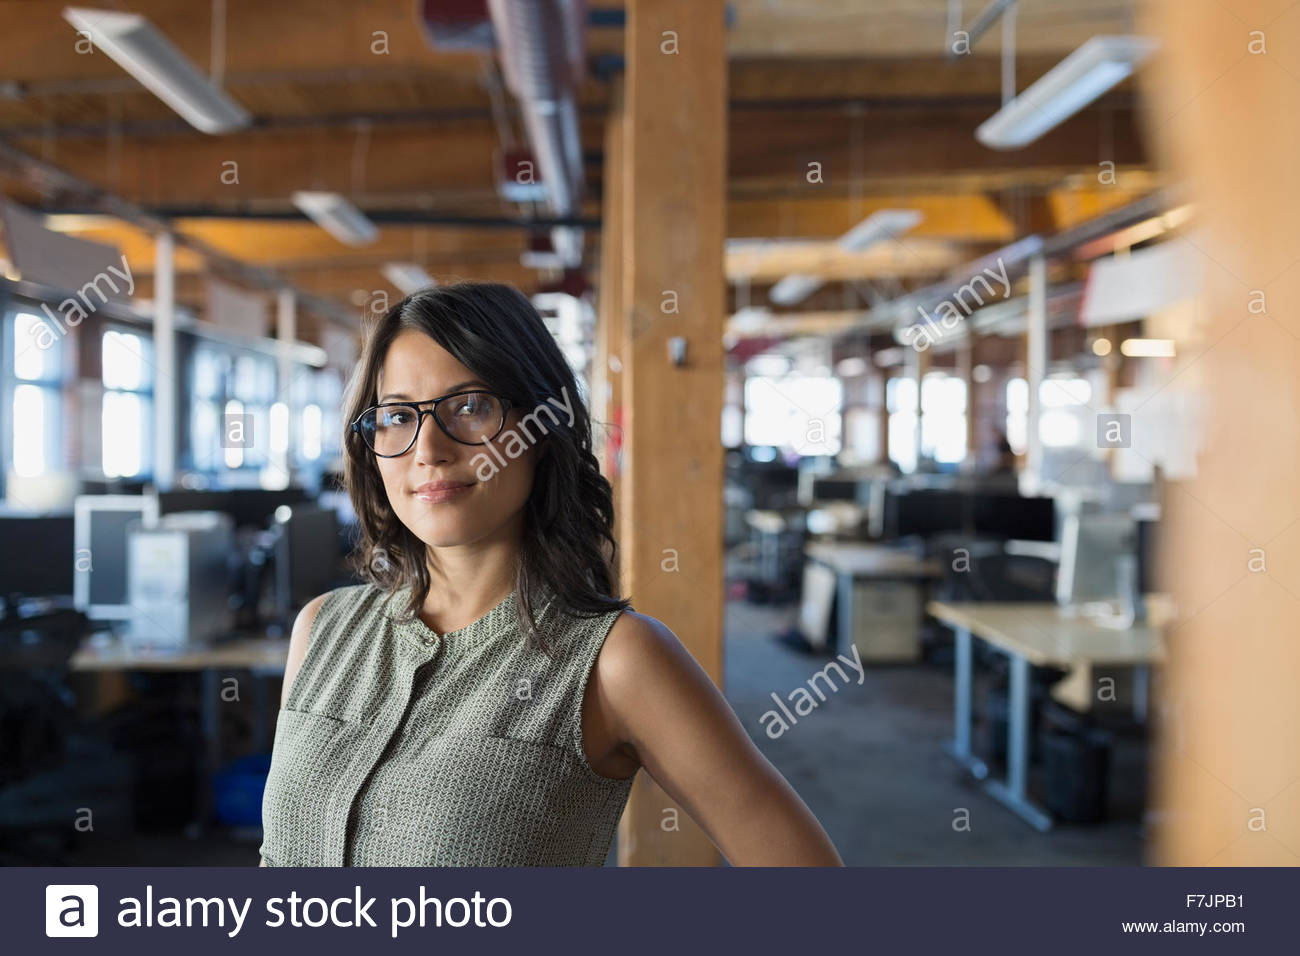 Portrait confident businesswoman in office Banque D'Images